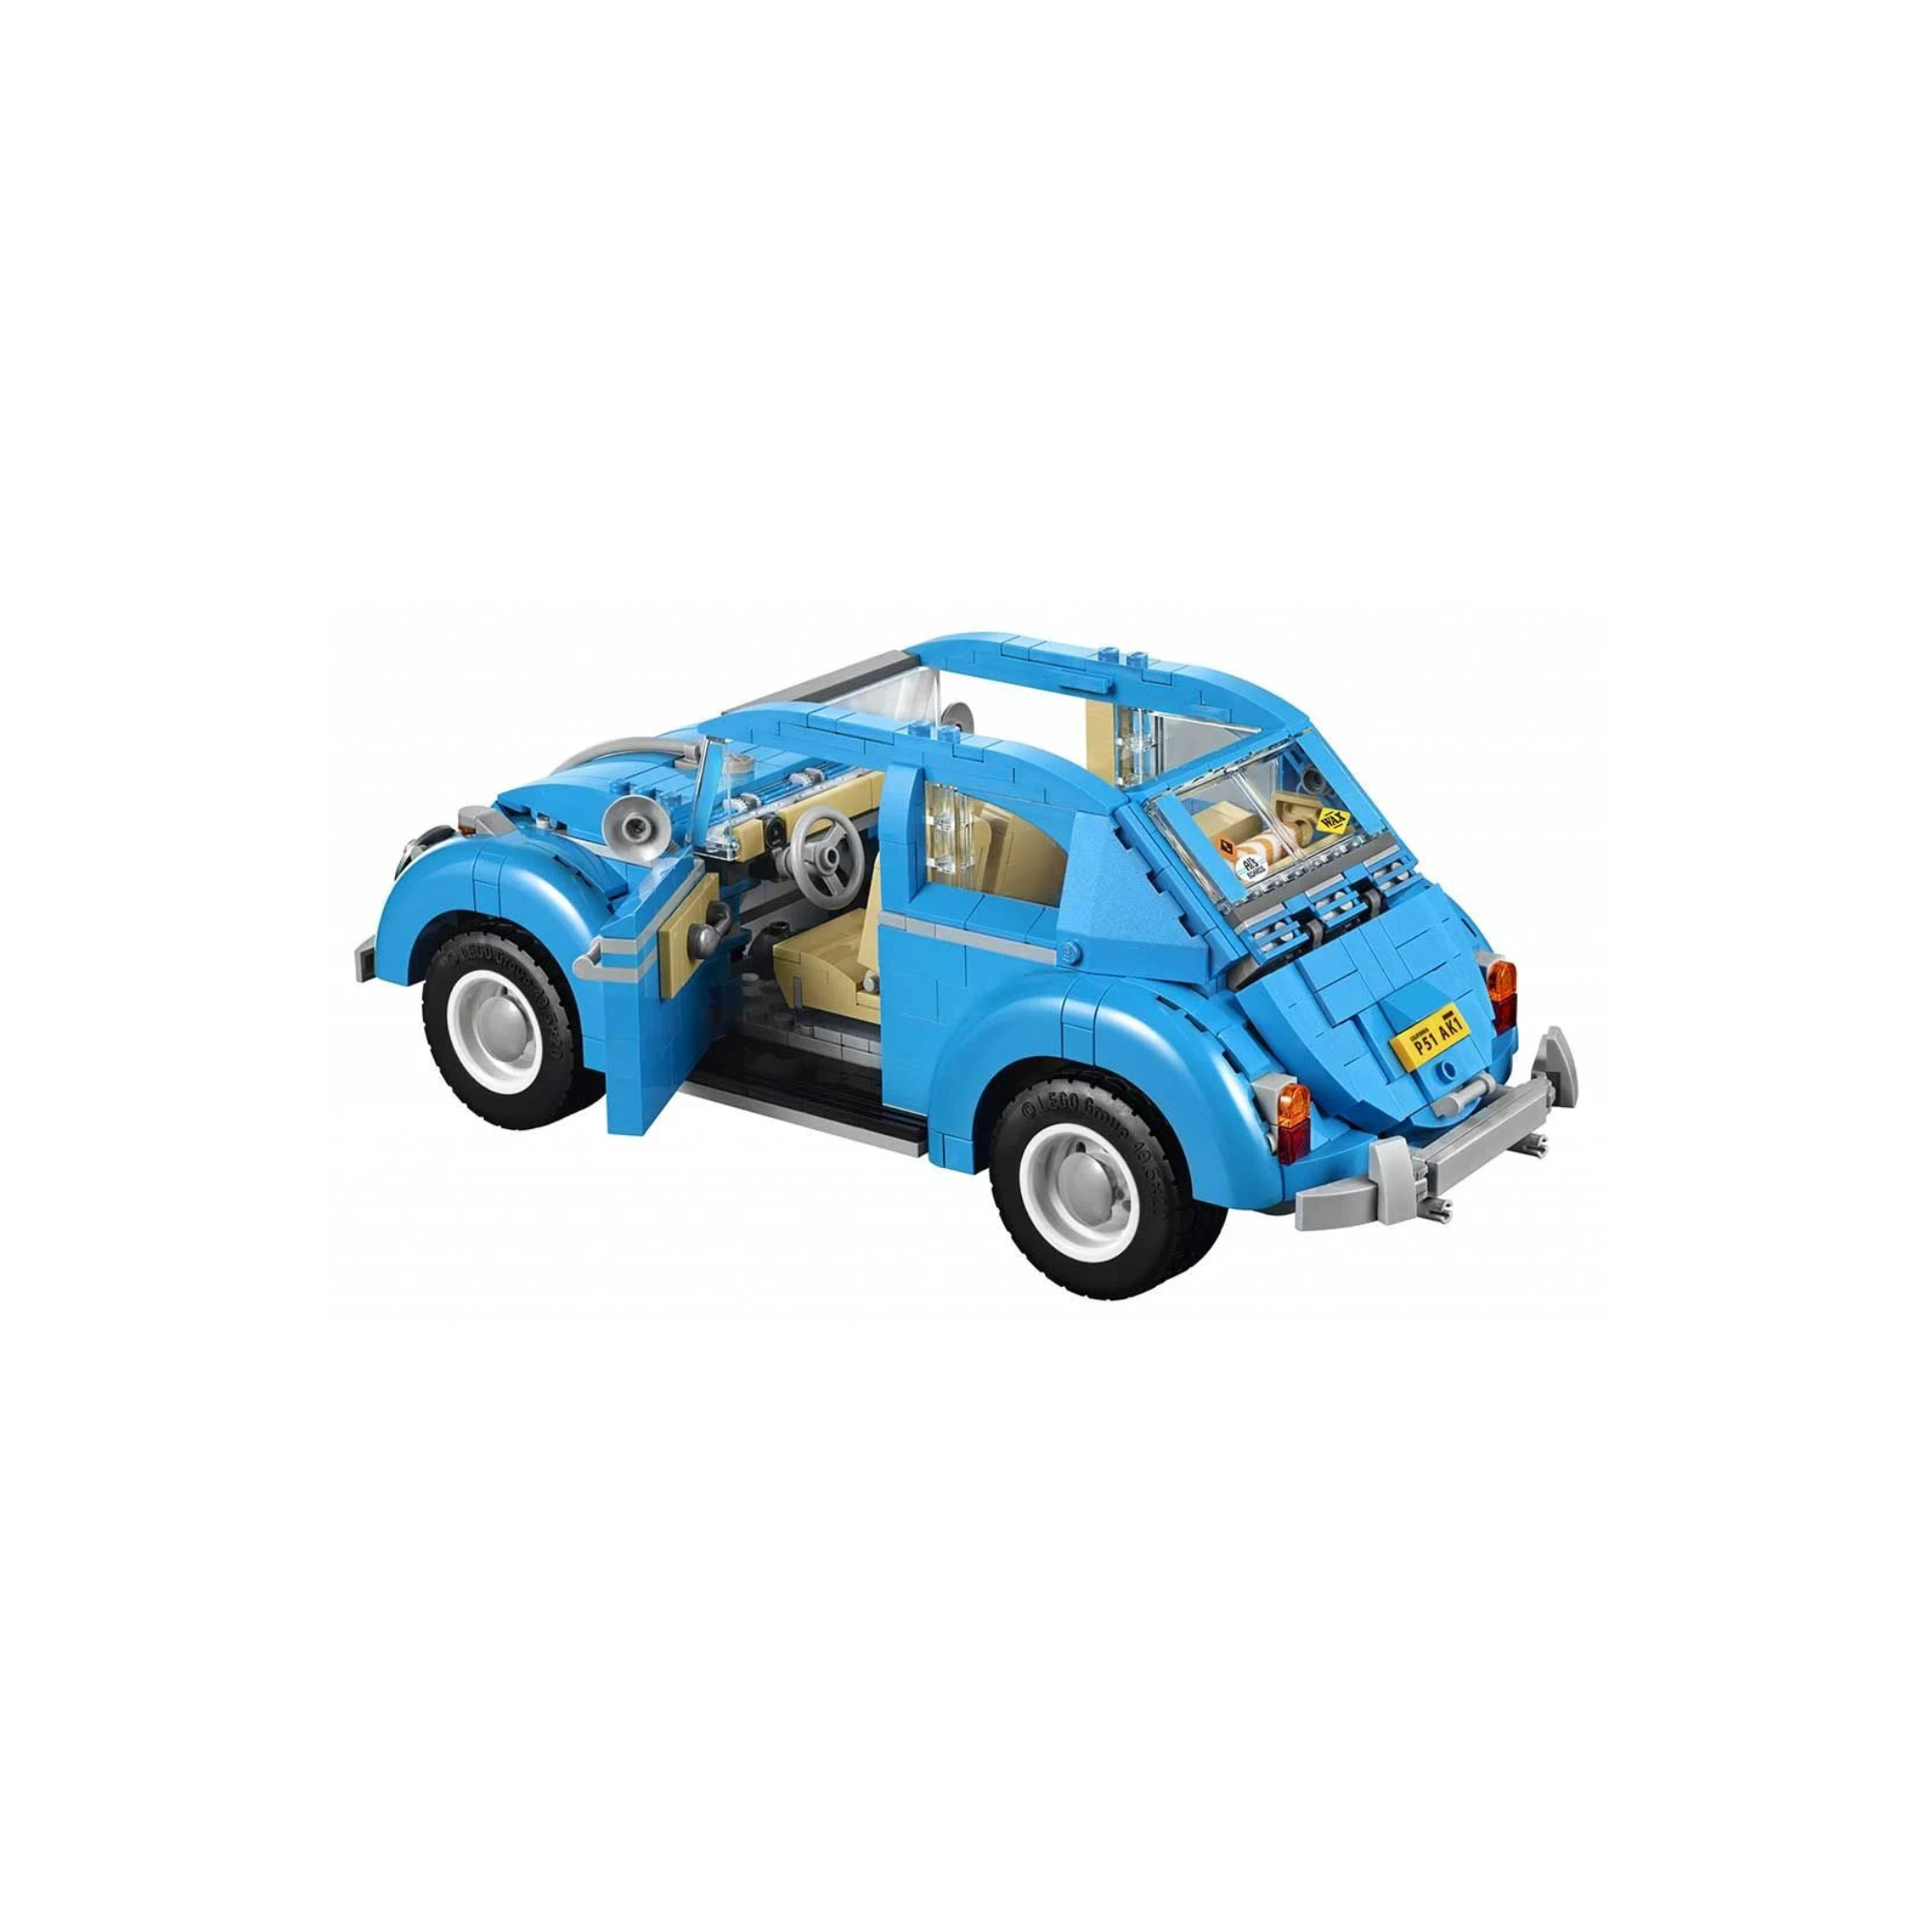 LEGO Creator Expert Volkswagen Beetle